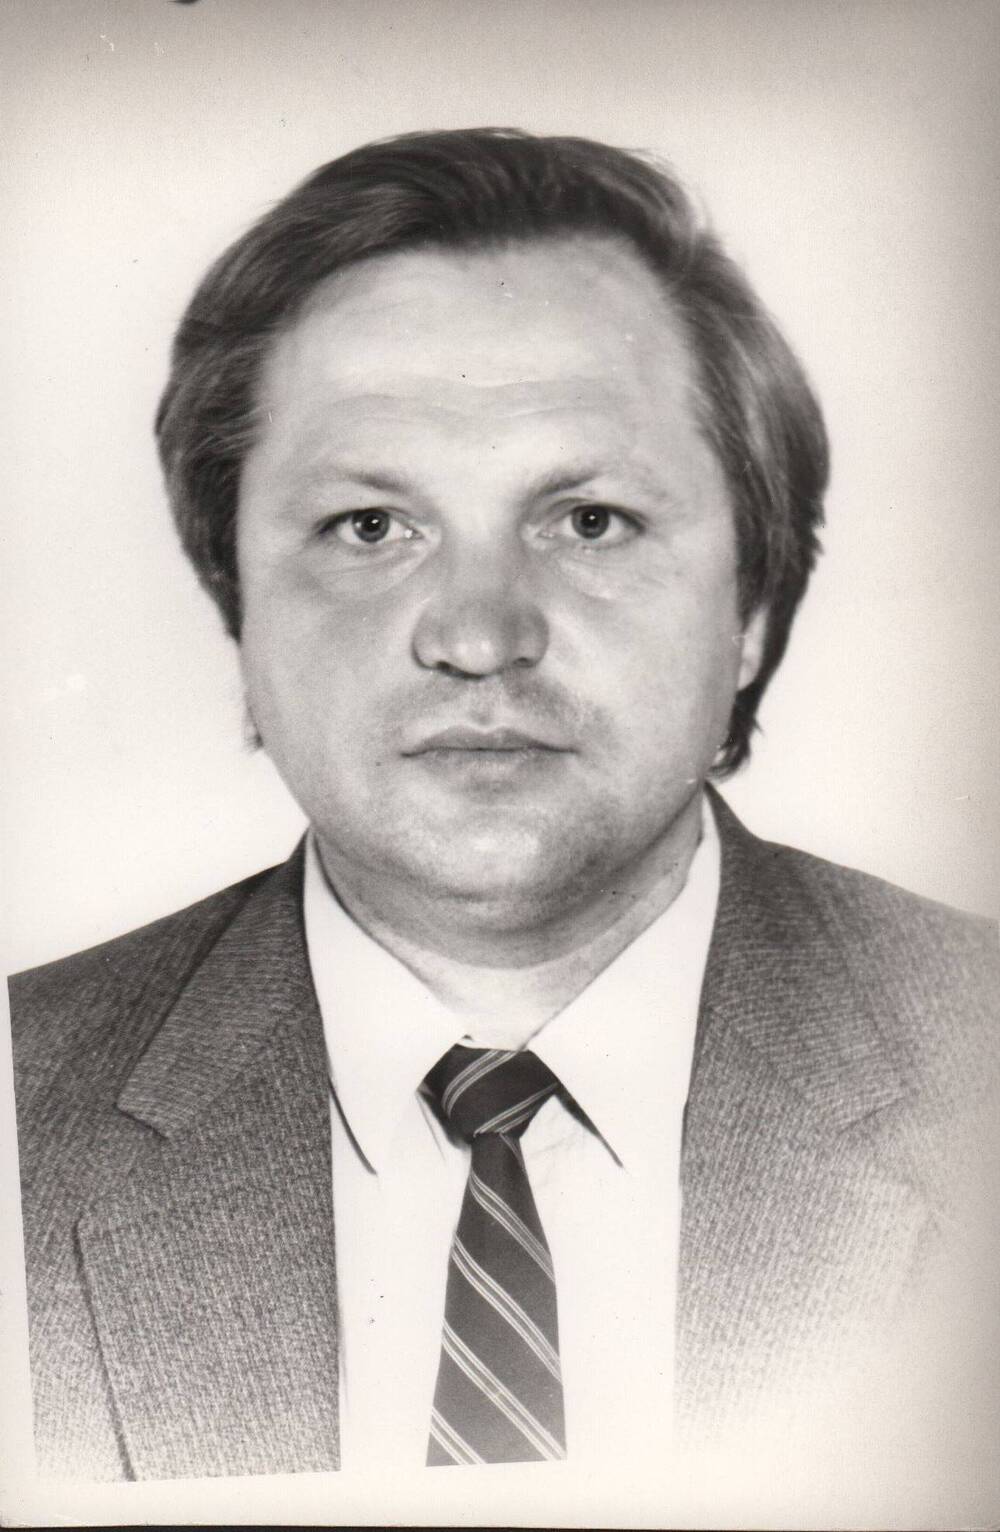 Фото: Смирнов Александр Владимирович - директор Белохолуницкого машиностроительного завода с сентября 1986 г.